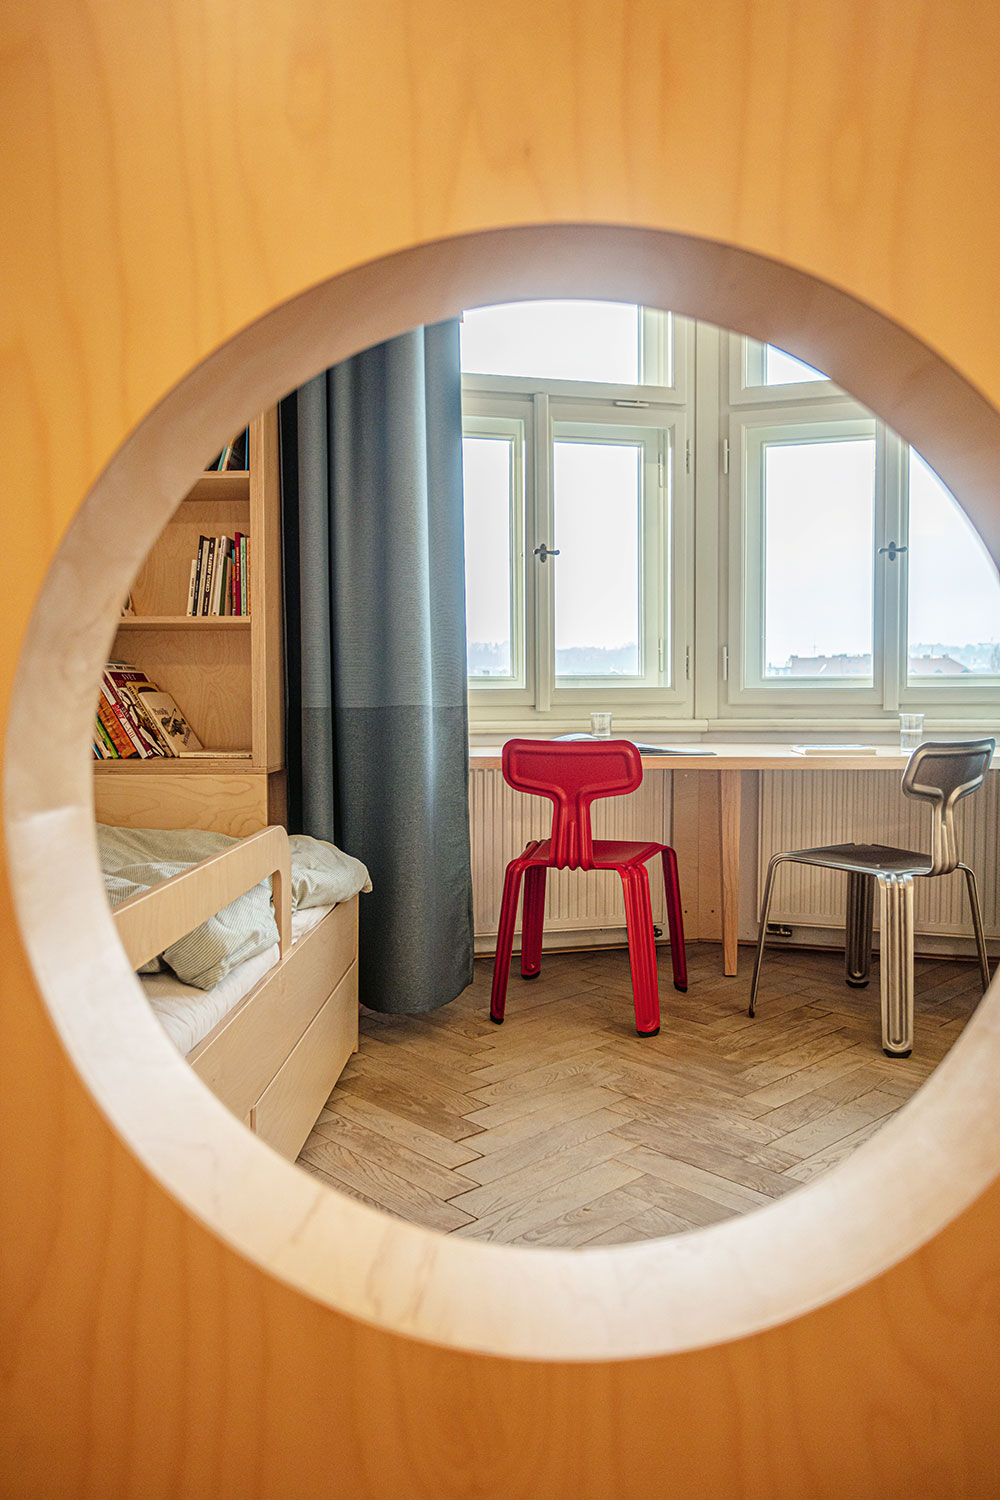 Dětský pokoj vznikl za přispění architektů ze studia A1 Architects, aby se do jedné místnosti vešly tři děti různého věku a přitom měl každý dostatek soukromí. FOTO JIŘÍ HURT